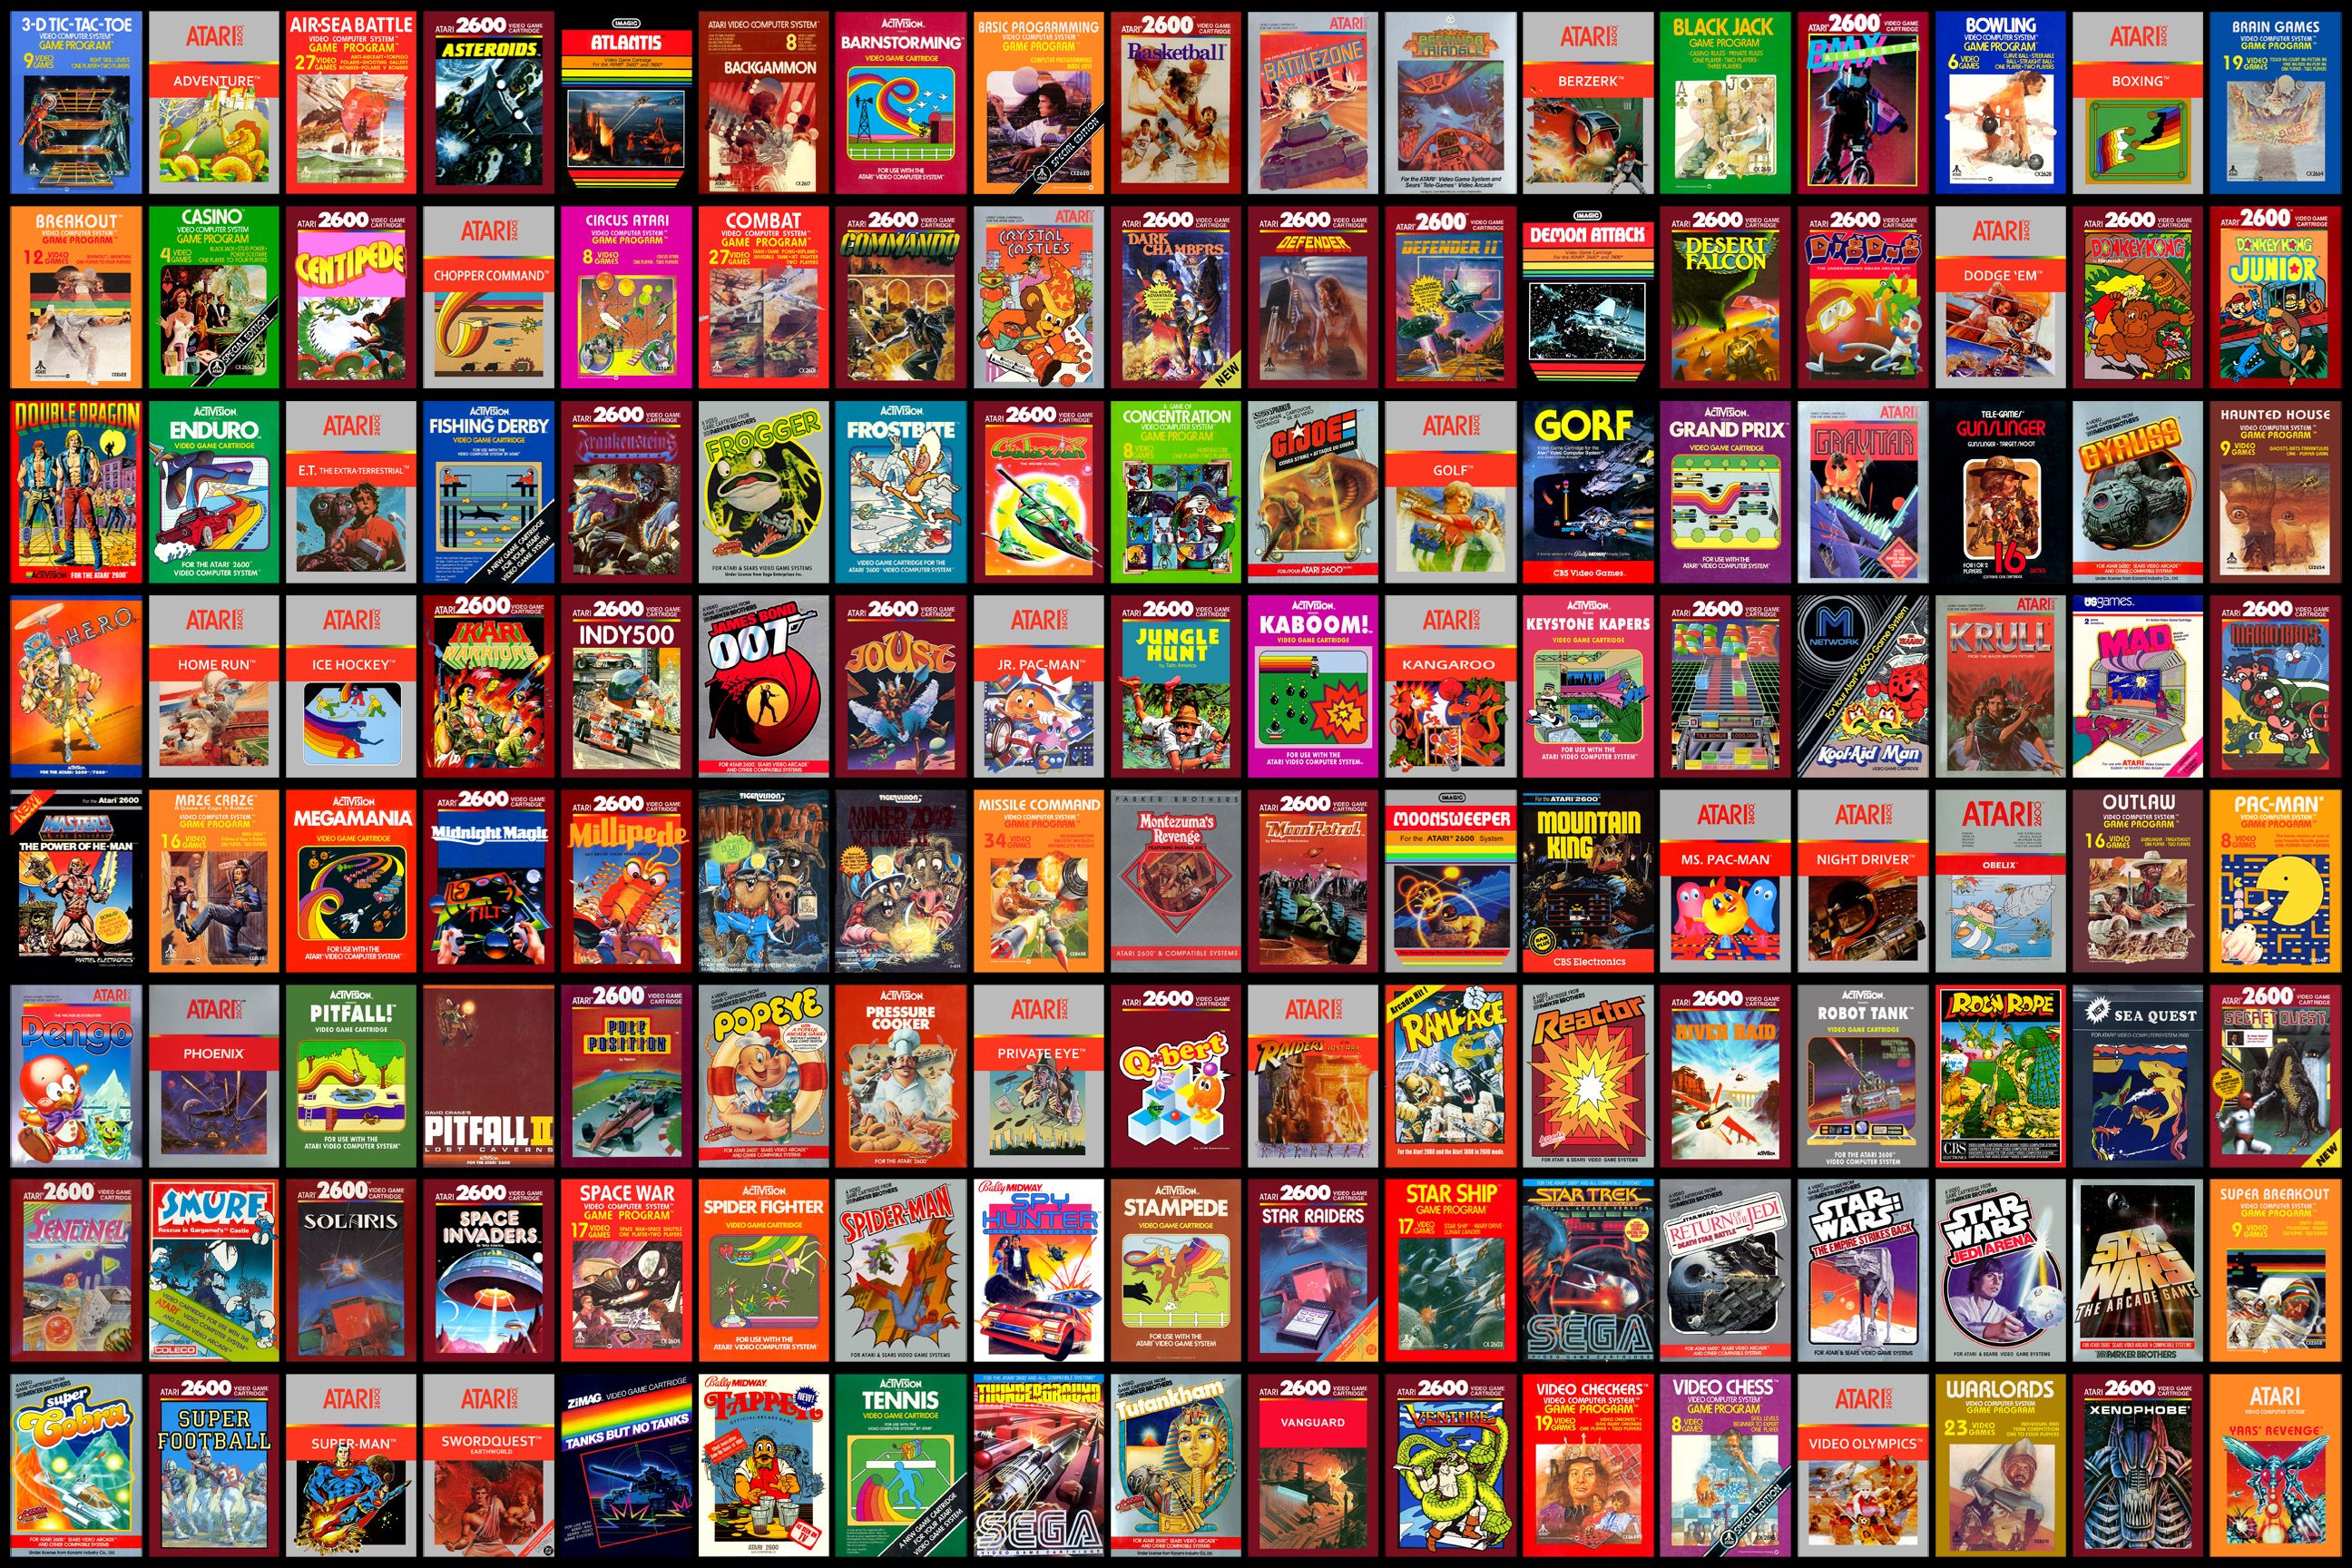 Atari wallpaper, Video Game, HQ Atari pictureK Wallpaper 2019